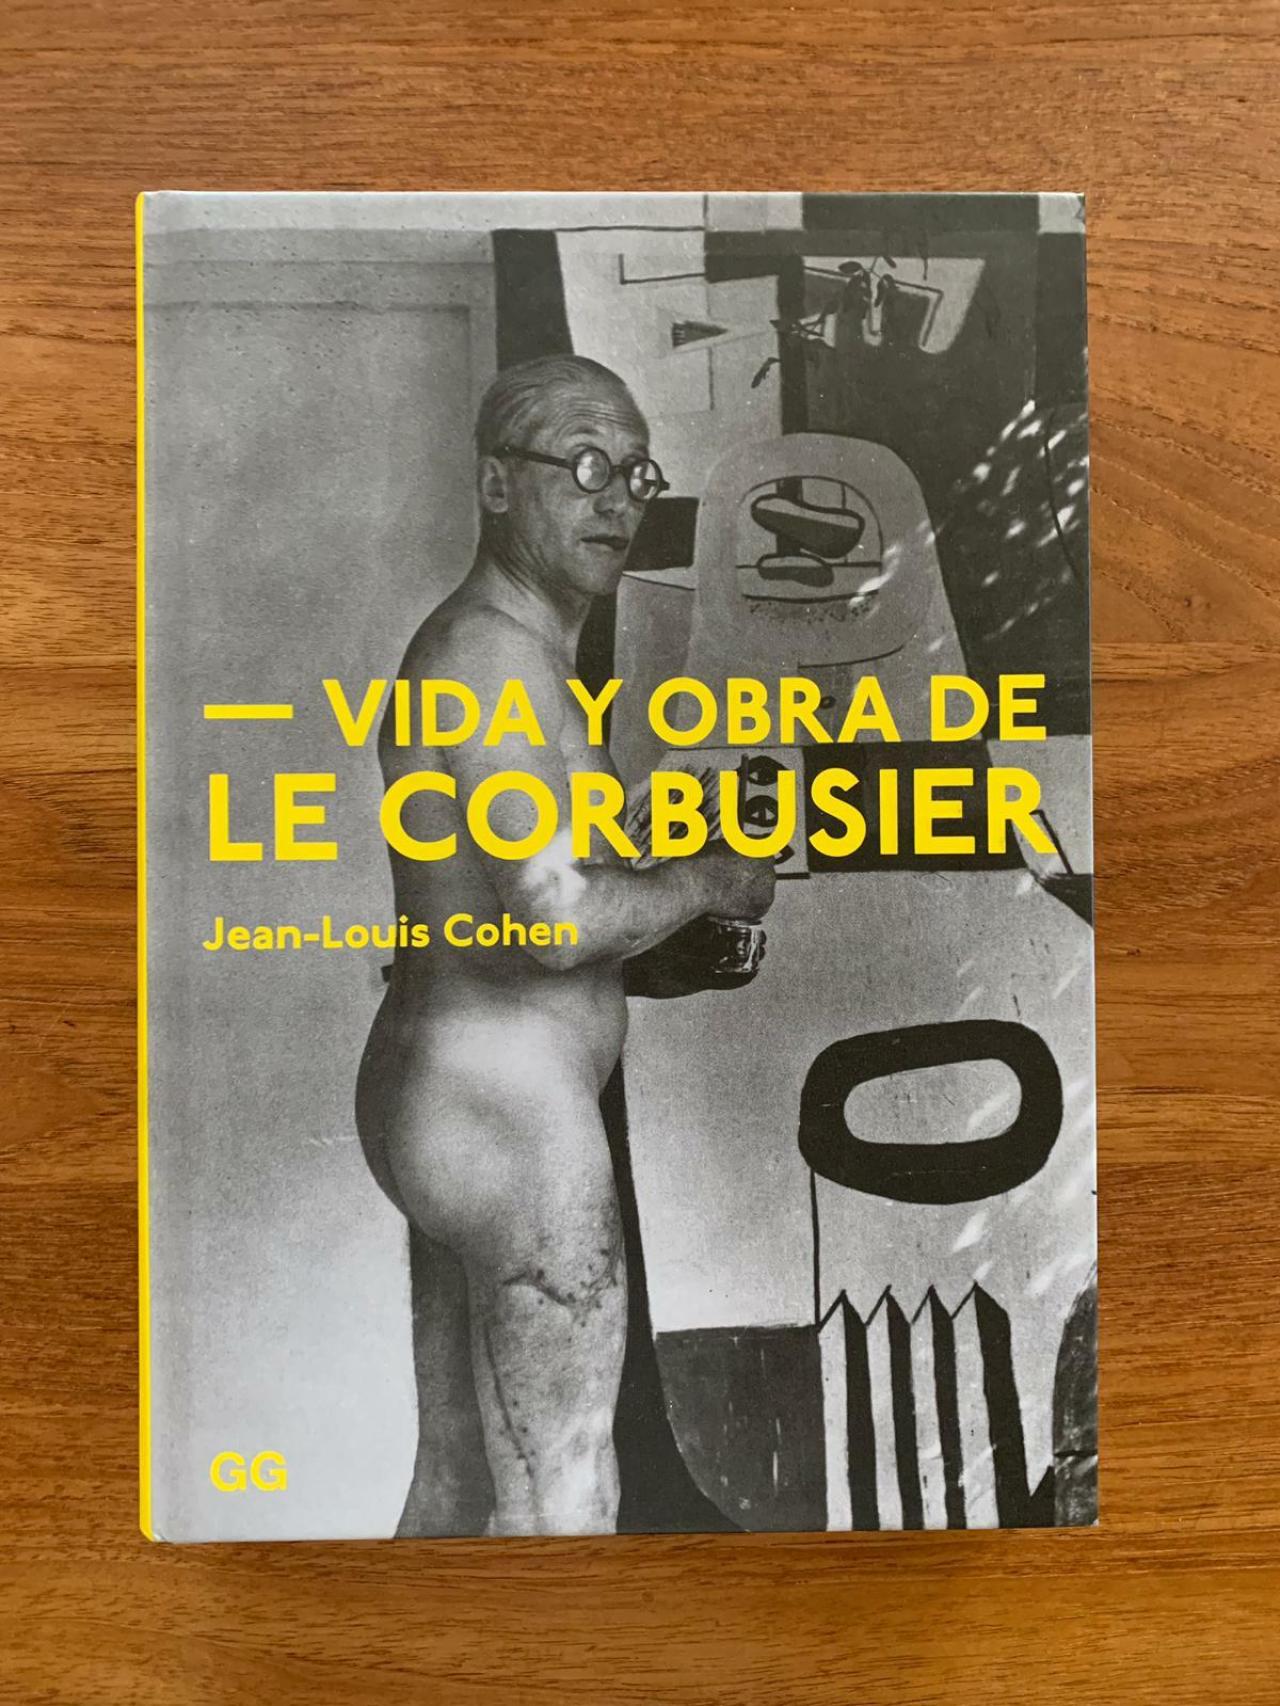 La portada “nudista” de Le Corbusier